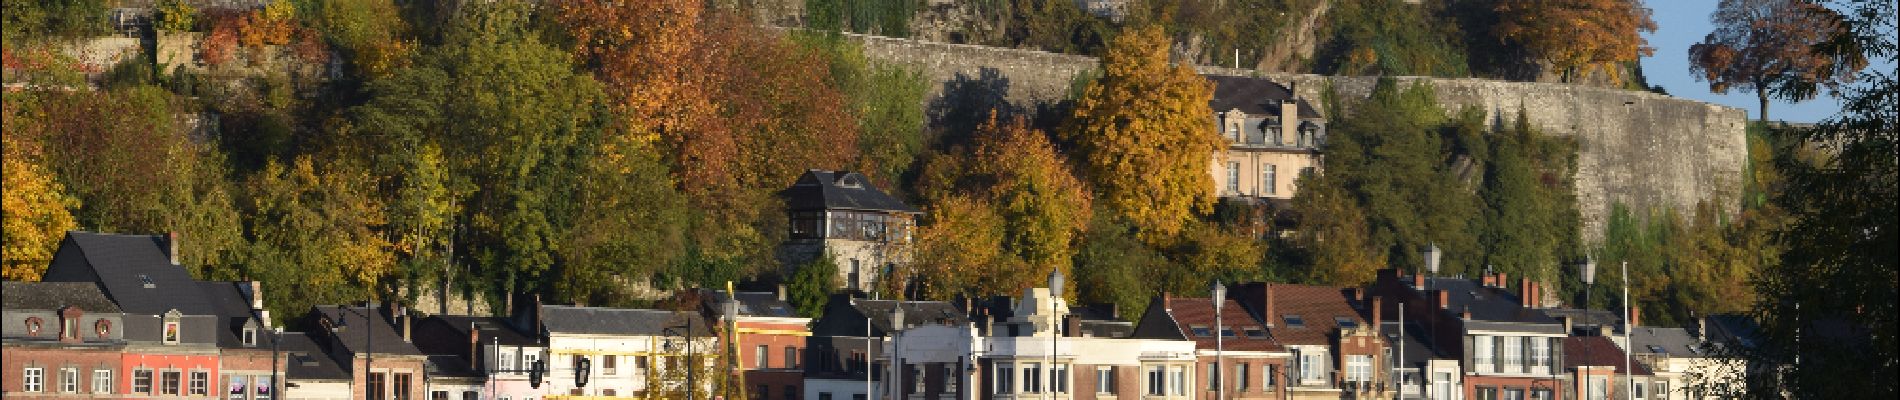 POI Namen - Citadelle de Namur - Photo